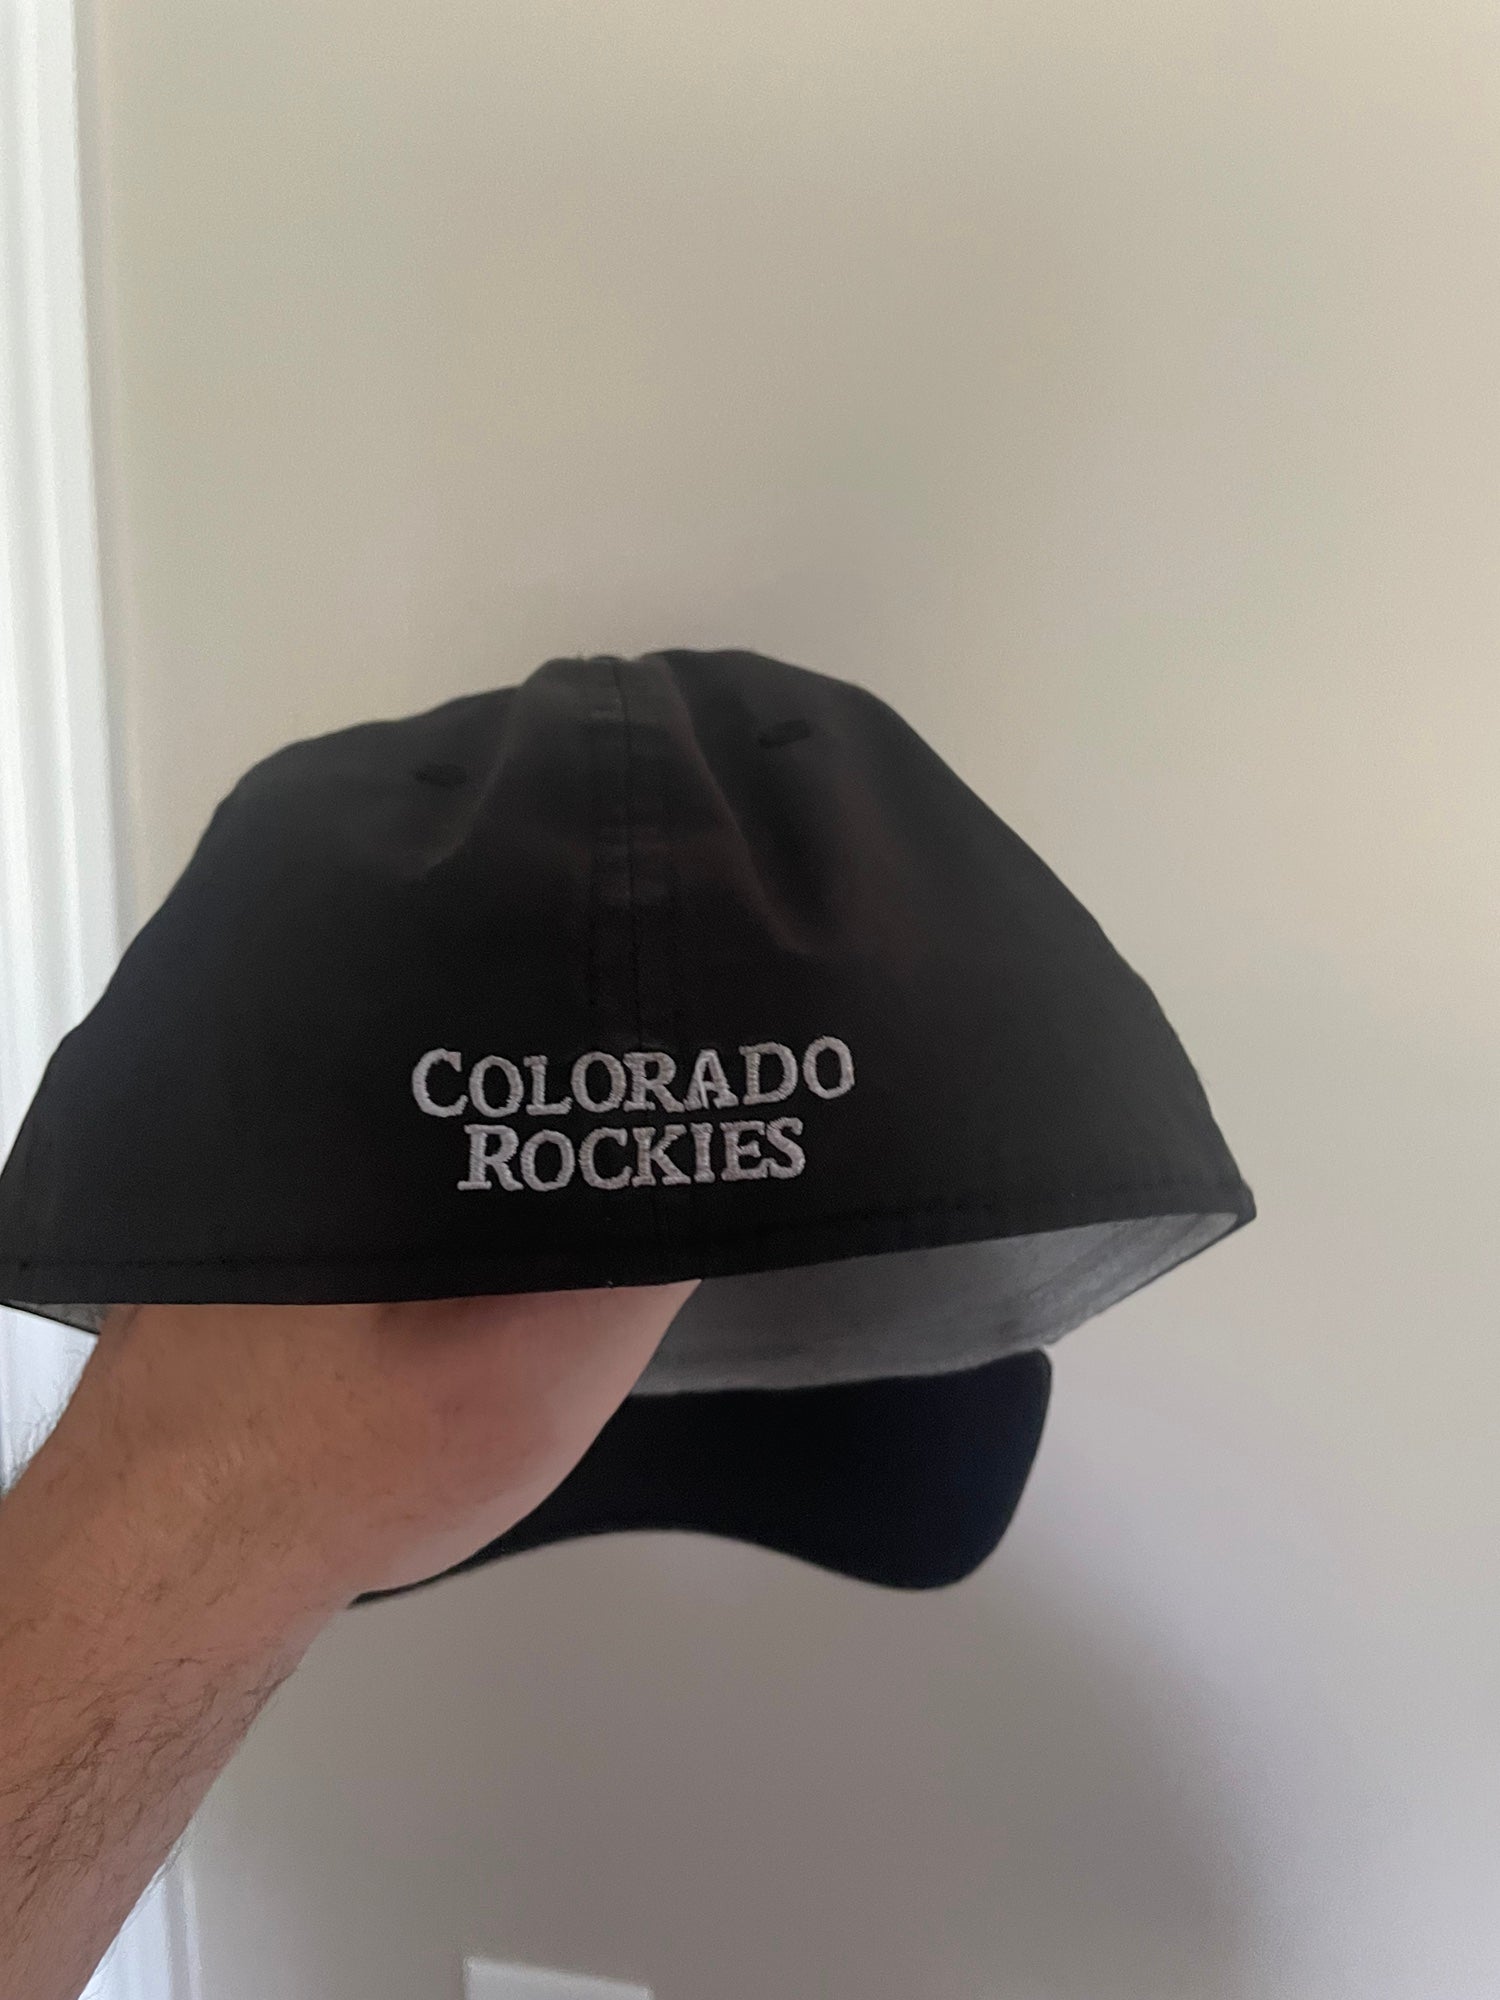 Colorado Rockies hat